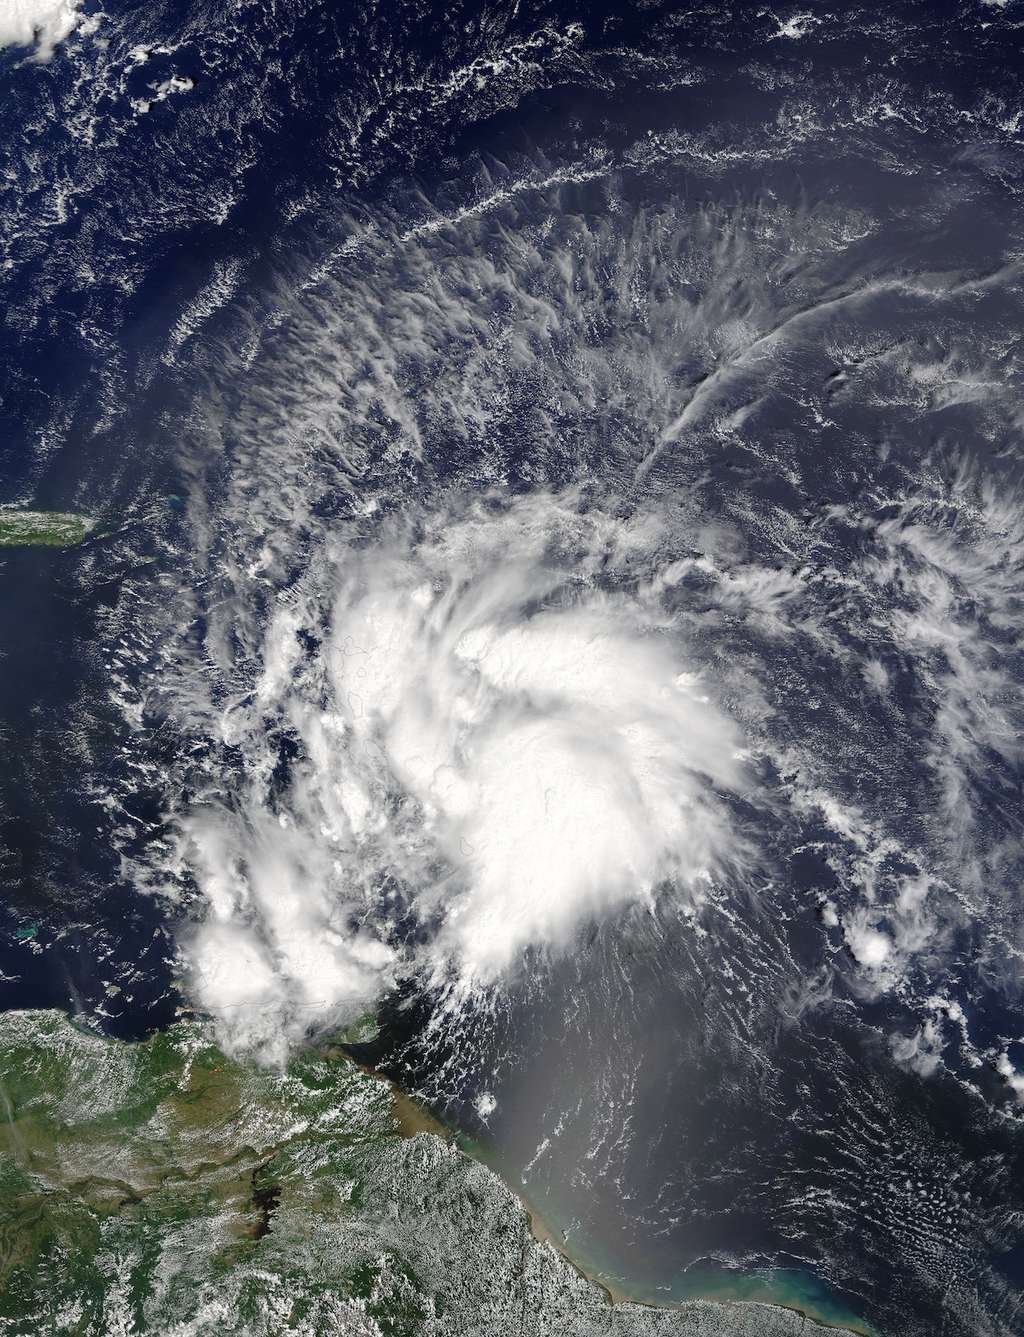 Image du satellite Aqua de la Nasa. Le 28 septembre, Matthew est une tempête tropicale, avec des rafales à 110 km/h, qui se dirige vers la mer des Caraïbes. Voir <a href="https://www.youtube.com/watch?v=XBsfWhvOCm8" title="Matthew Becomes a Hurricane in Caribbean" target="_blank">ici</a> une animation créée à partir des images du satellite Goes-East de la NOAA qui montre l’évolution de Matthew en ouragan de catégorie 4. © <em>Nasa Goddard MODIS Rapid Response Team</em>